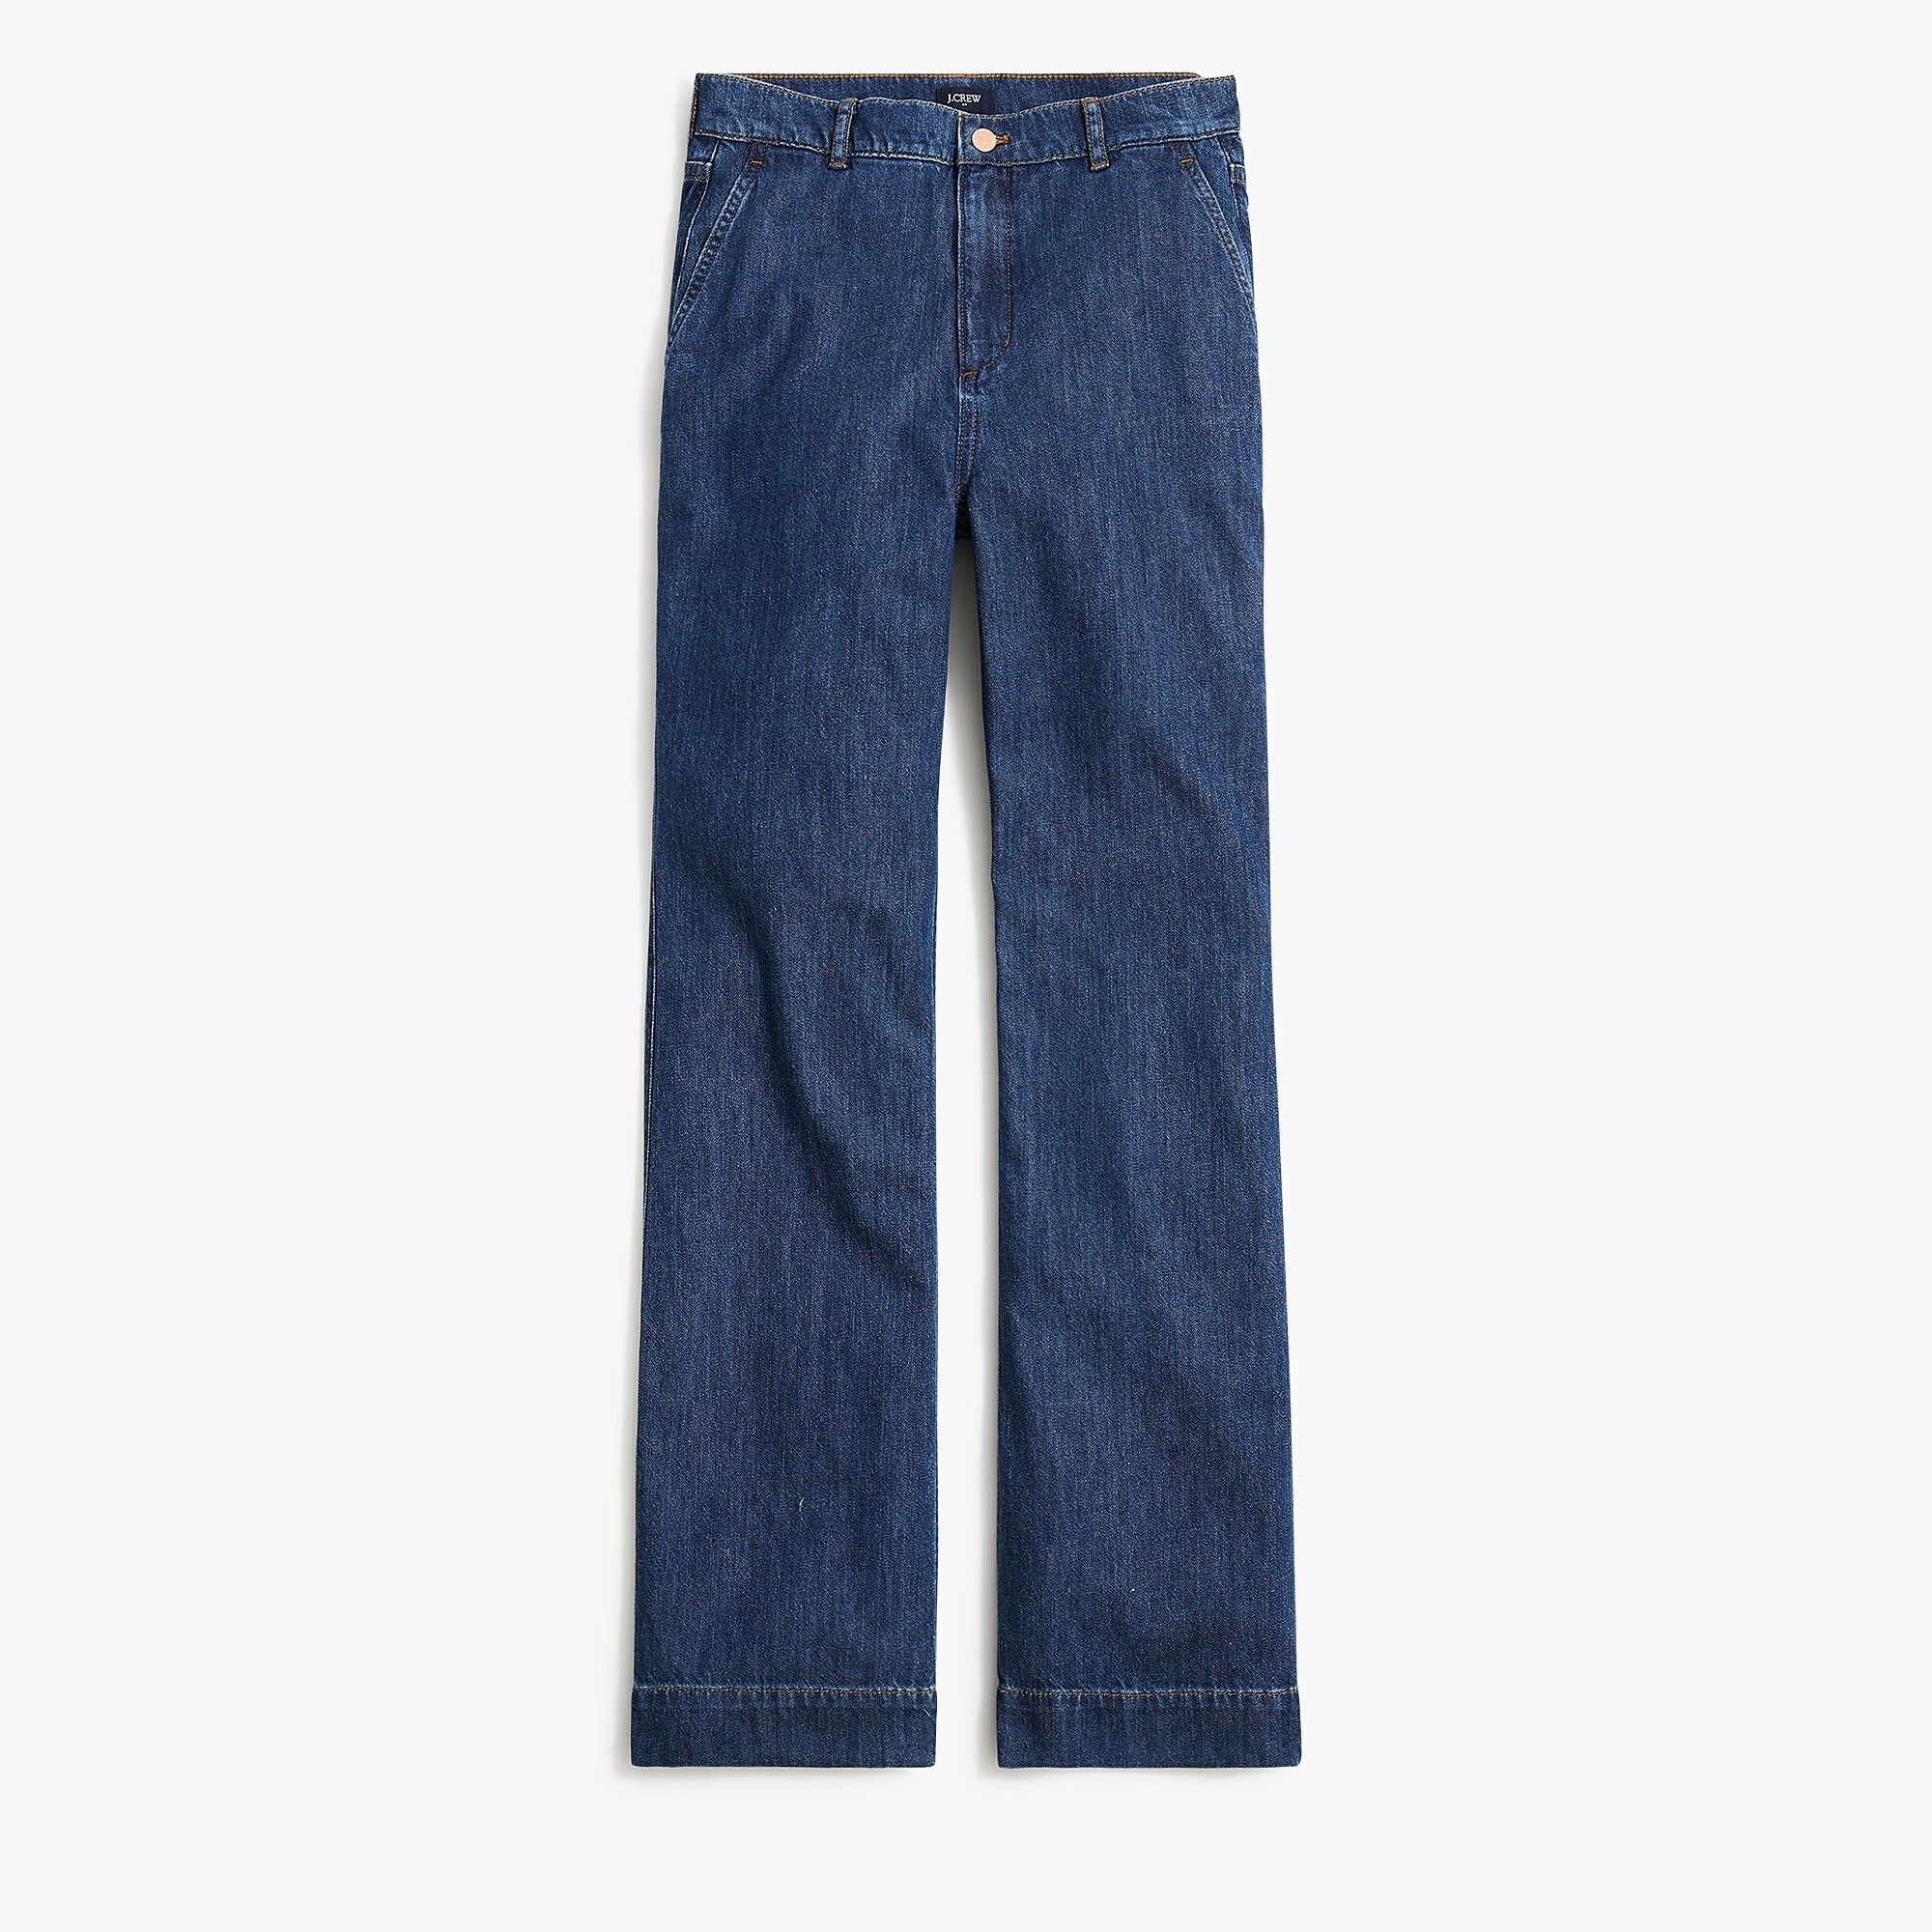 Denim trouser pant | J.Crew Factory